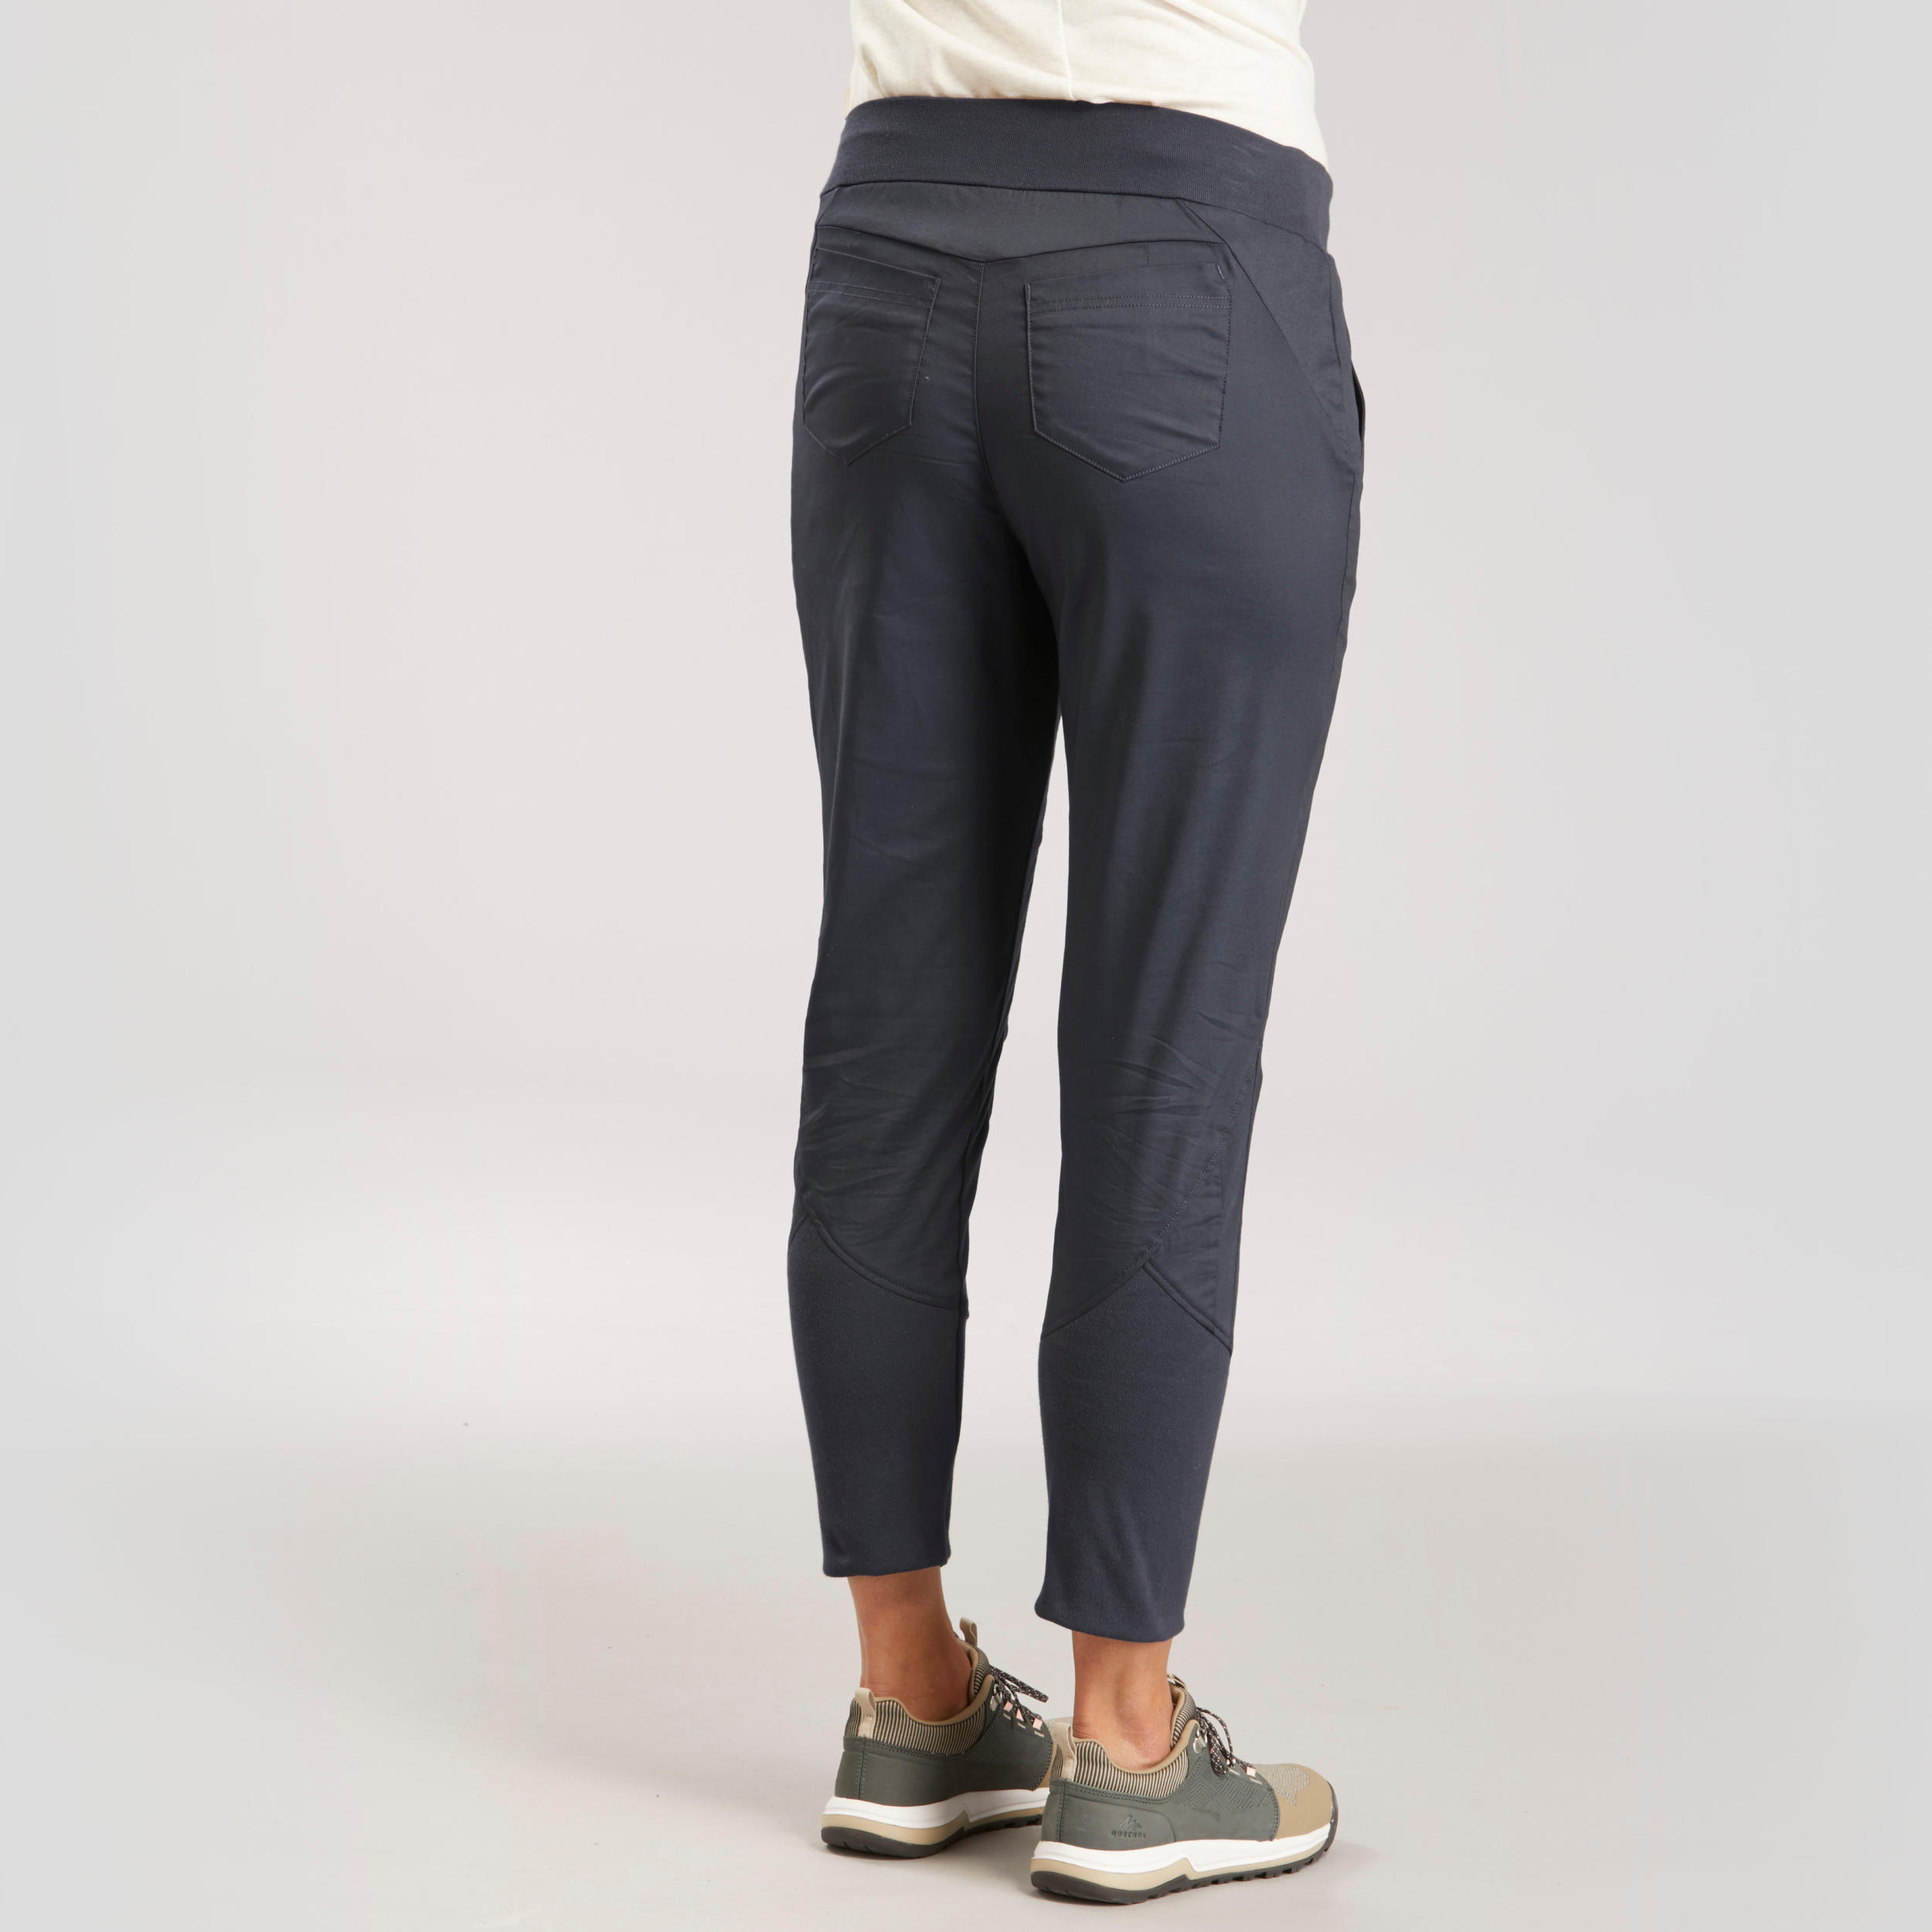 Pantalon de randonnée ajusté femme - NH 500 gris - QUECHUA